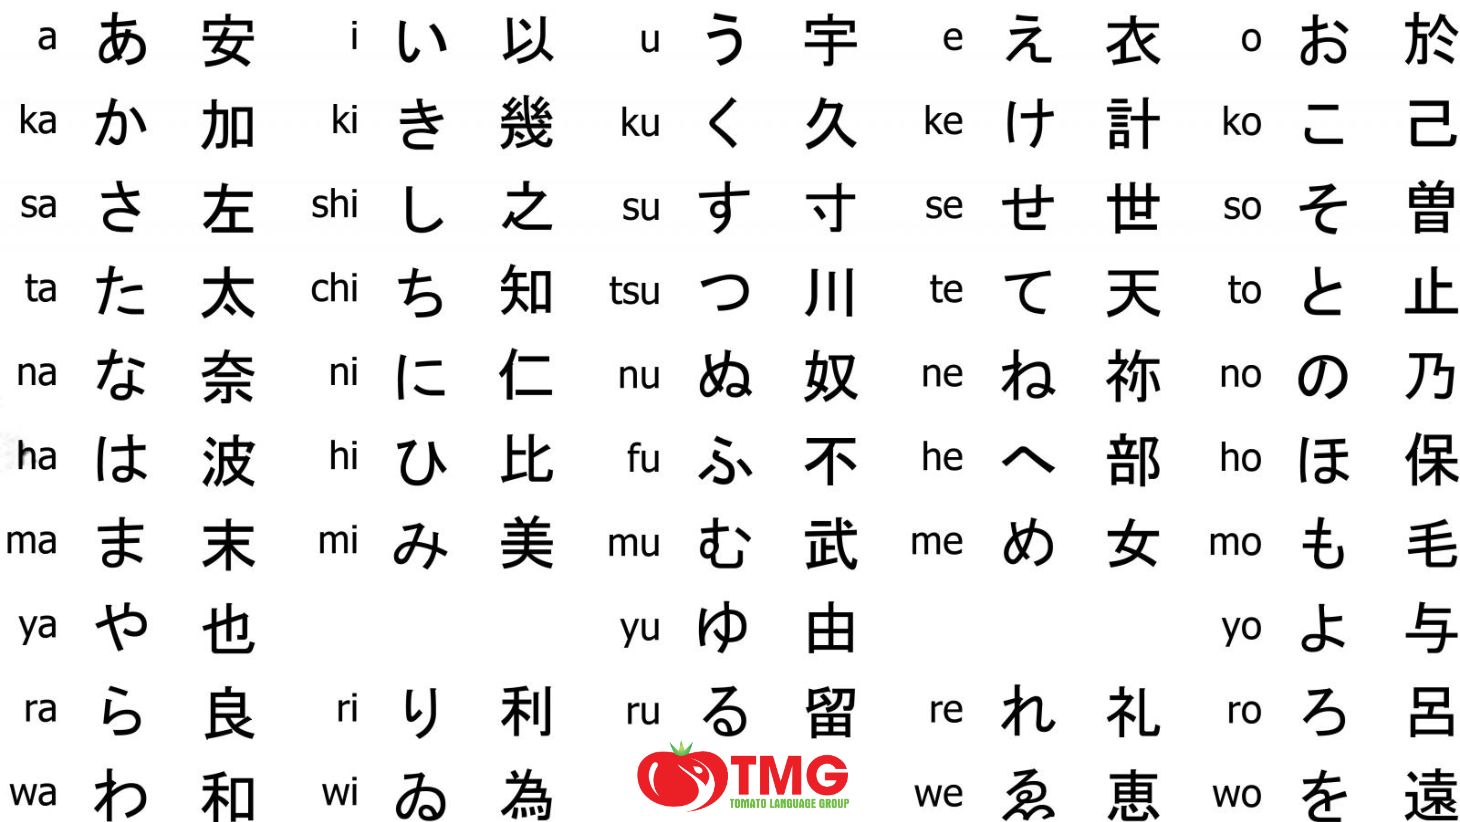 Học bảng chữ cái tiếng Nhật dễ nhớ - Ảnh 2